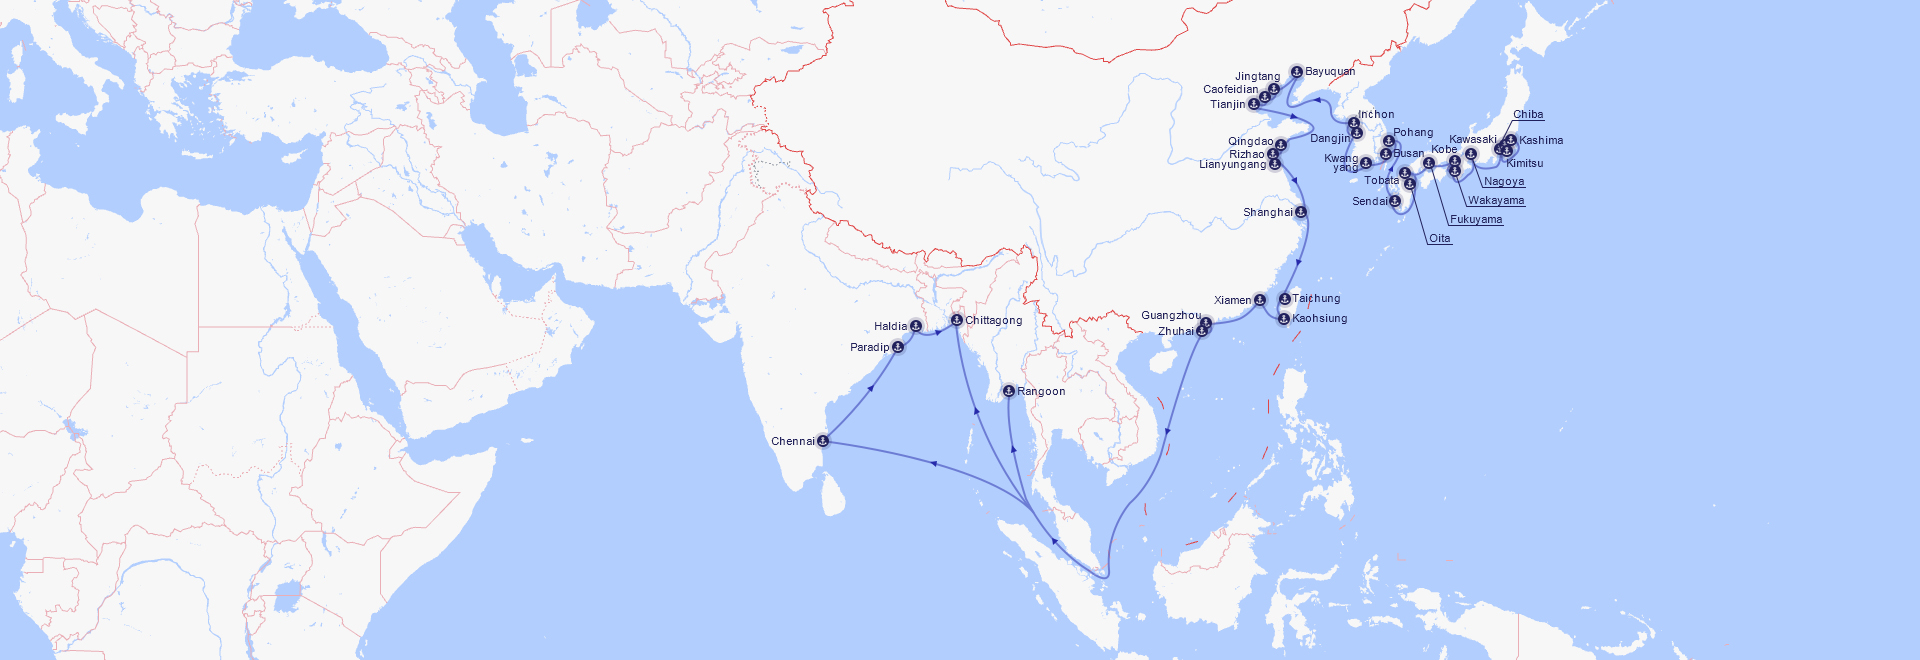 远东至印东/孟加拉航线